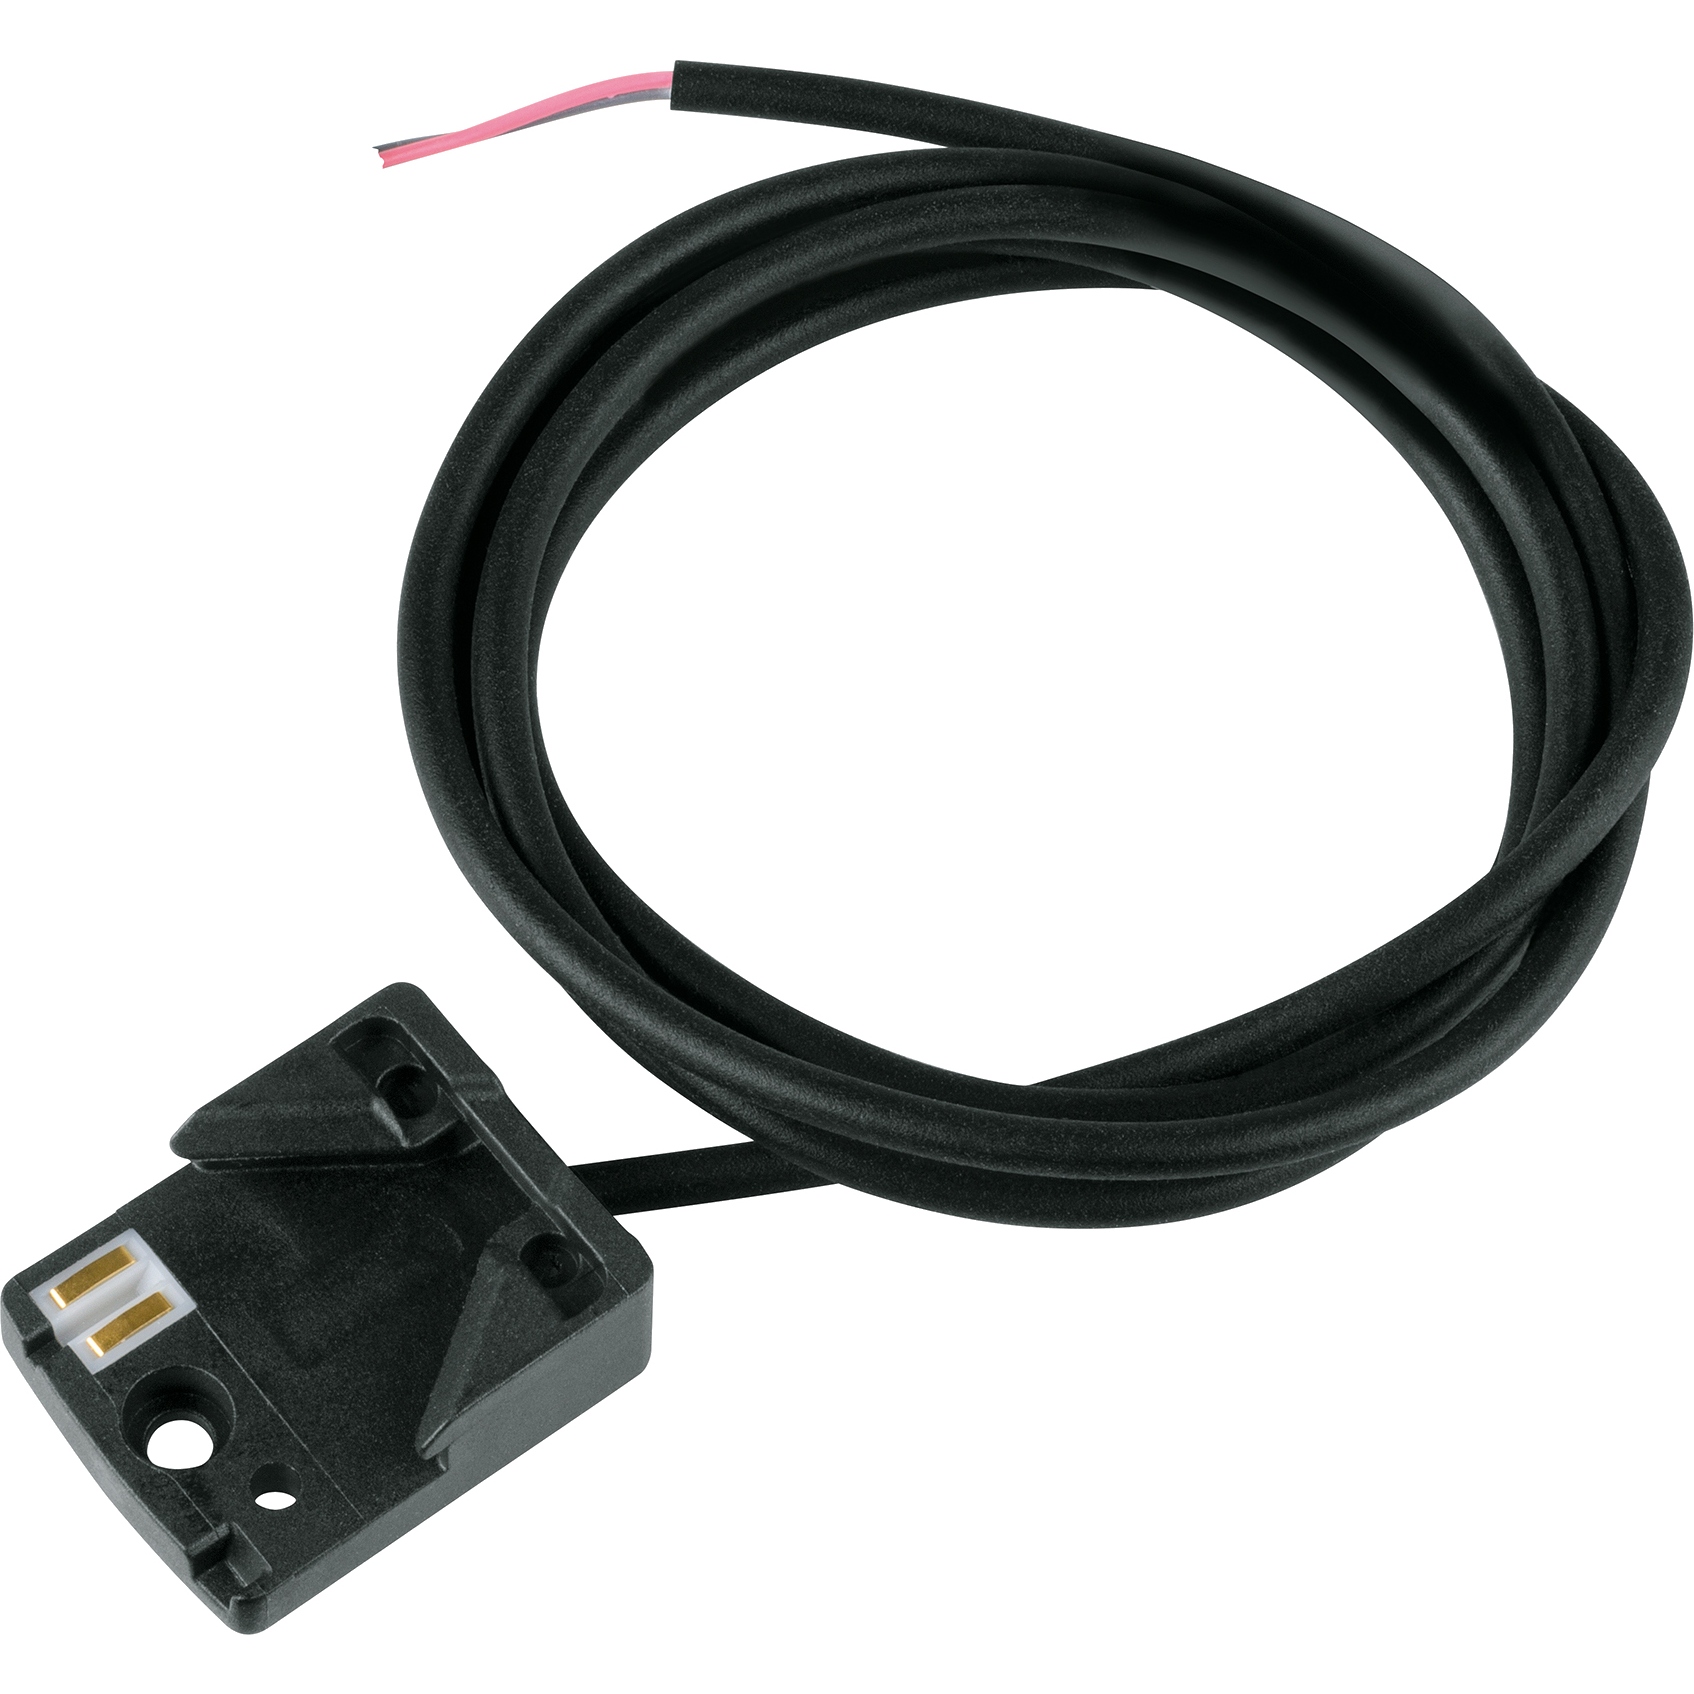 Produktbild von MonkeyLink Interface Connect One4All REAR 800mm - Kabel für E-Bike Rückleuchte